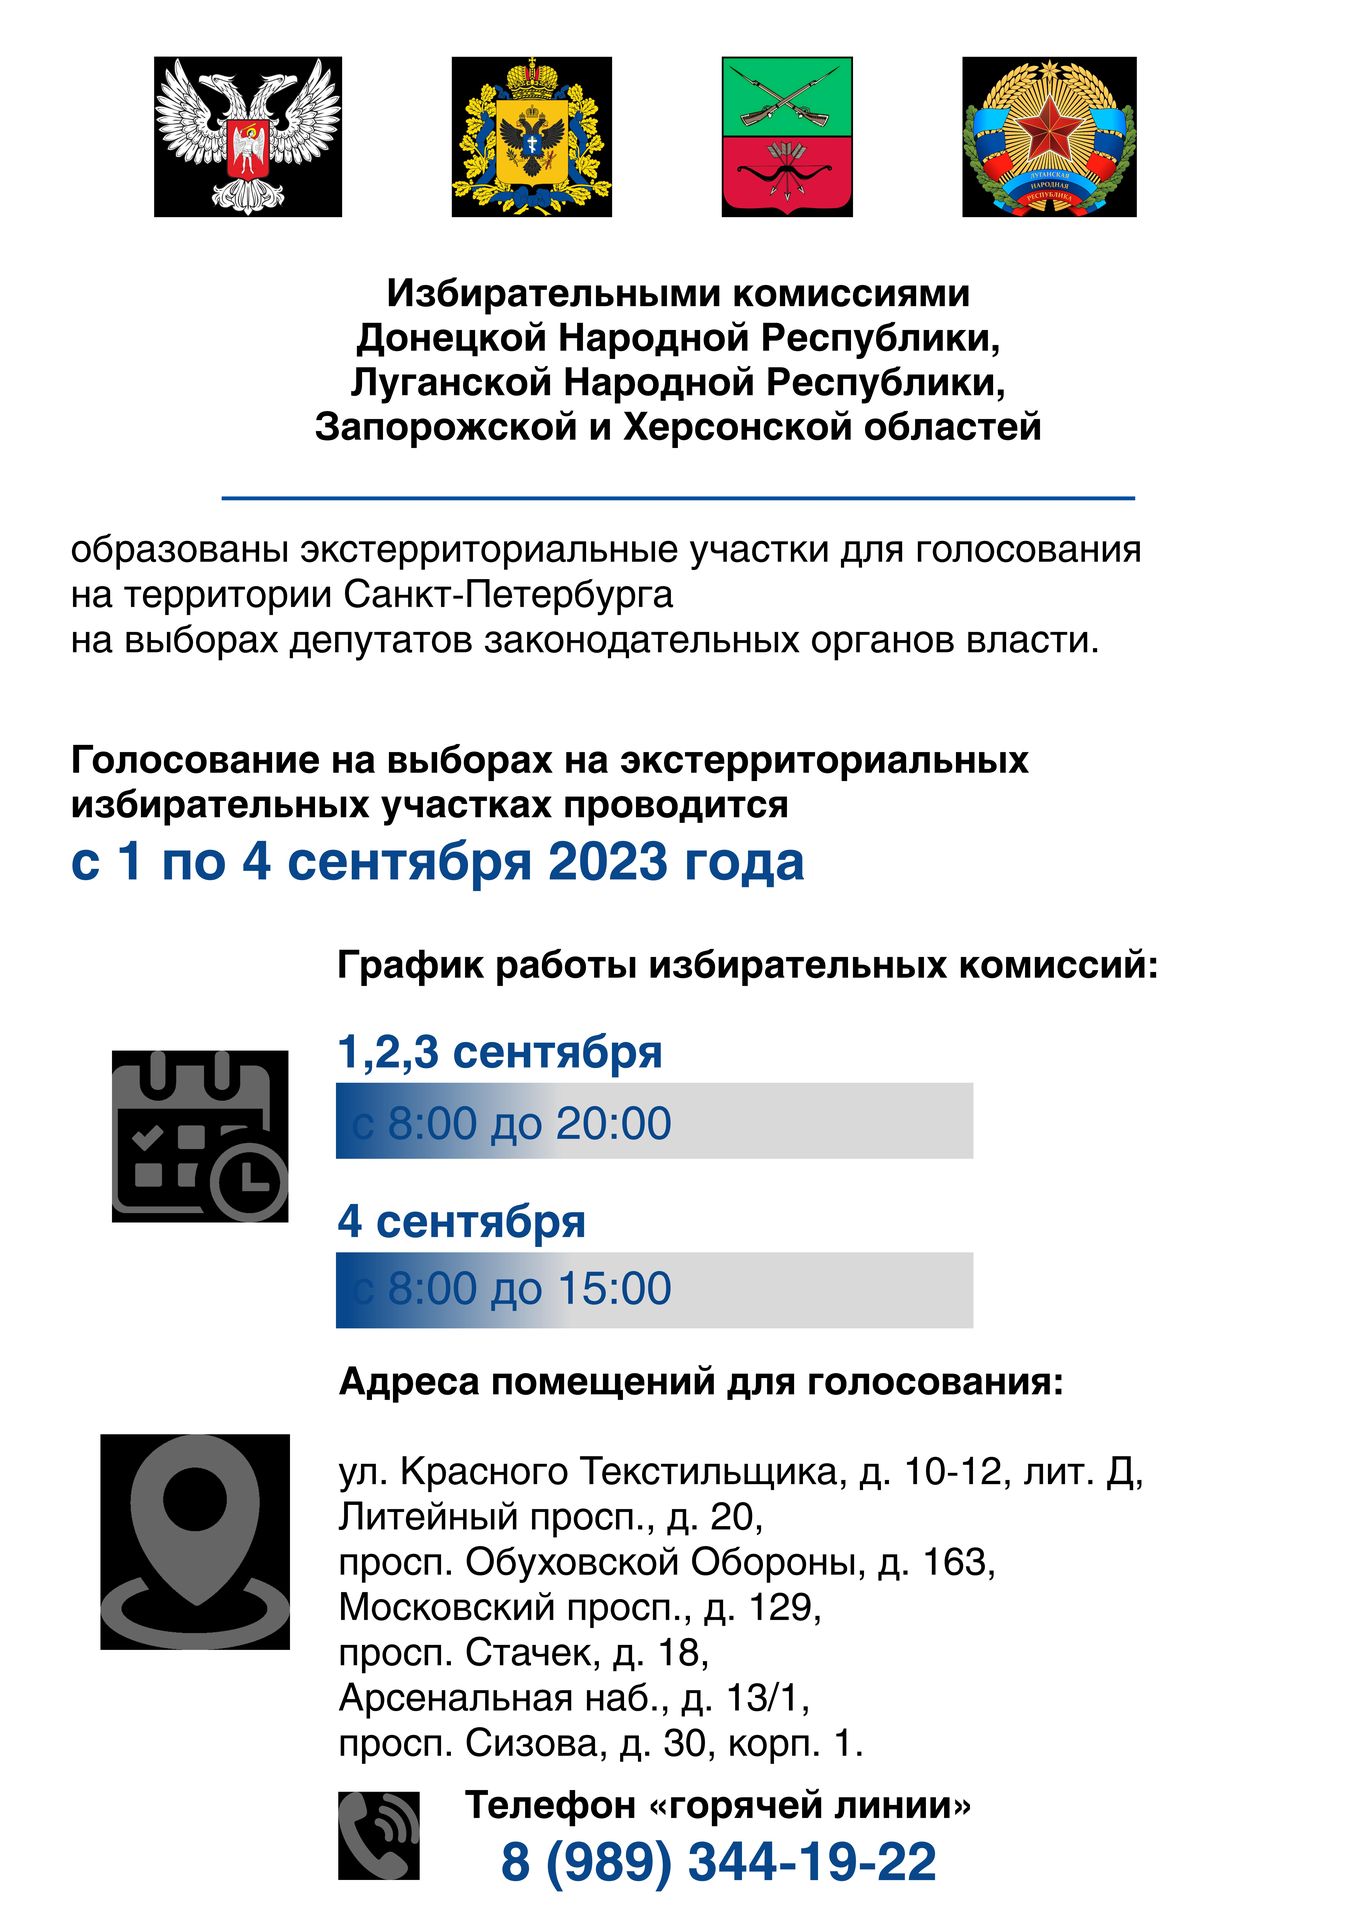 экстерриториальные участки для голосования на территории Санкт-Петербурга